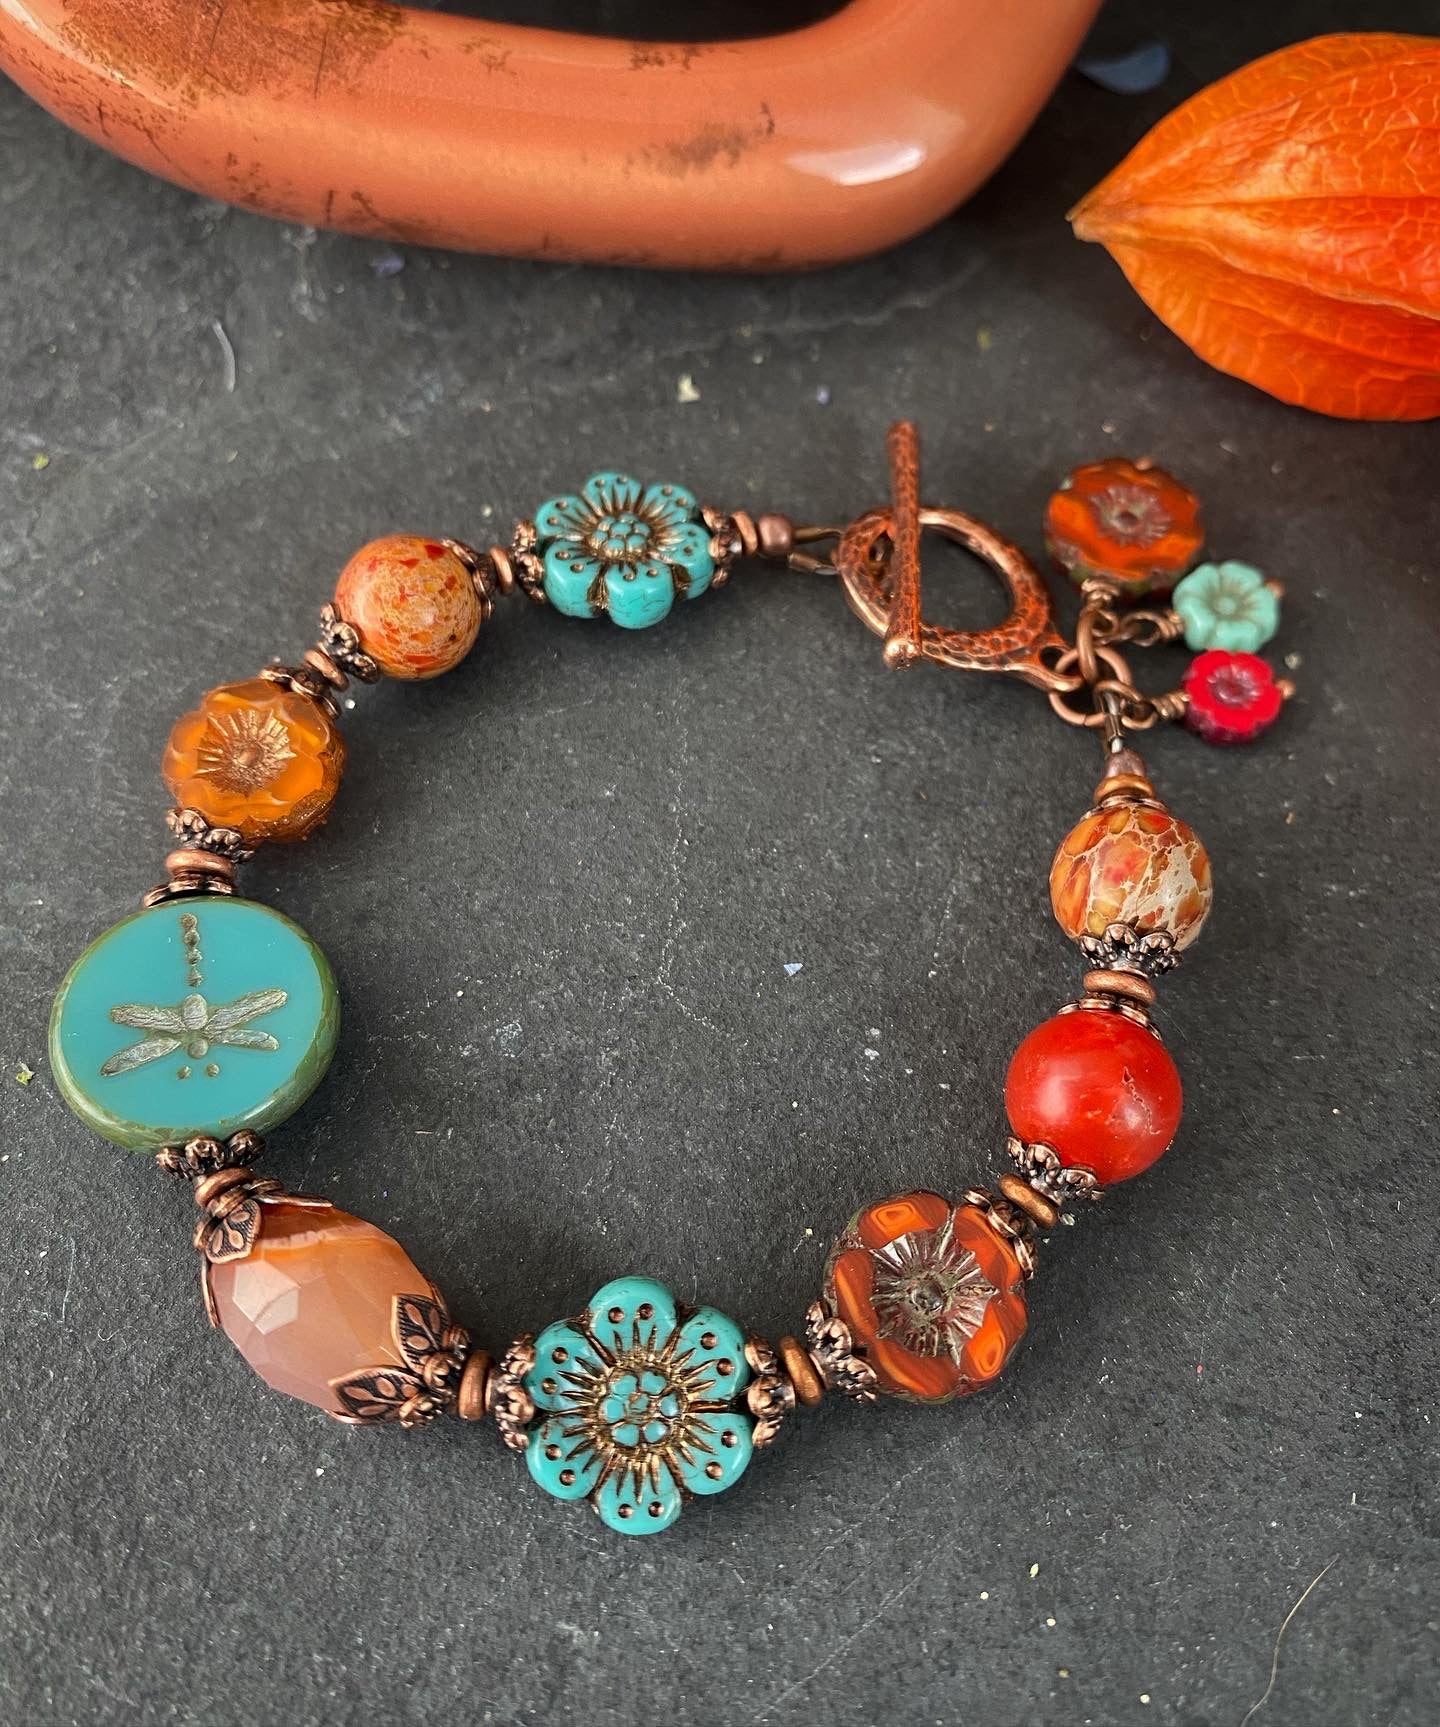 Flower Czech glass in turquoise, orange jasper, agate, copper metal bracelet.